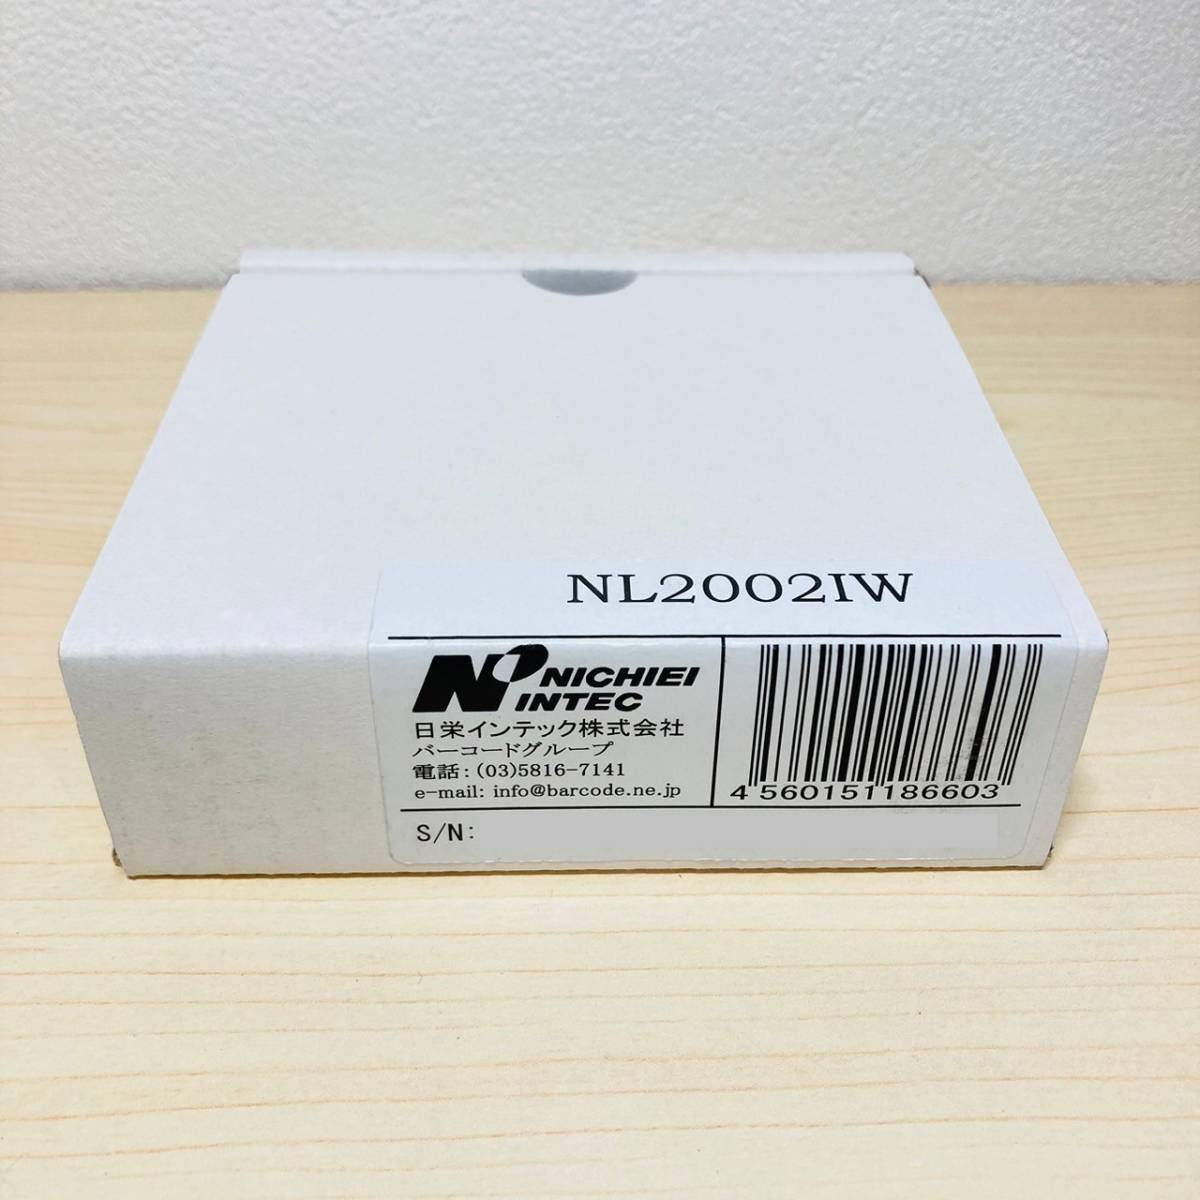 354 ■ 日栄インテック NL2002IW データコレクタ Auto-ID 小型 軽量 Bluetooth USB バーコード スキャナ スキャン ワイヤレス 無線_画像5